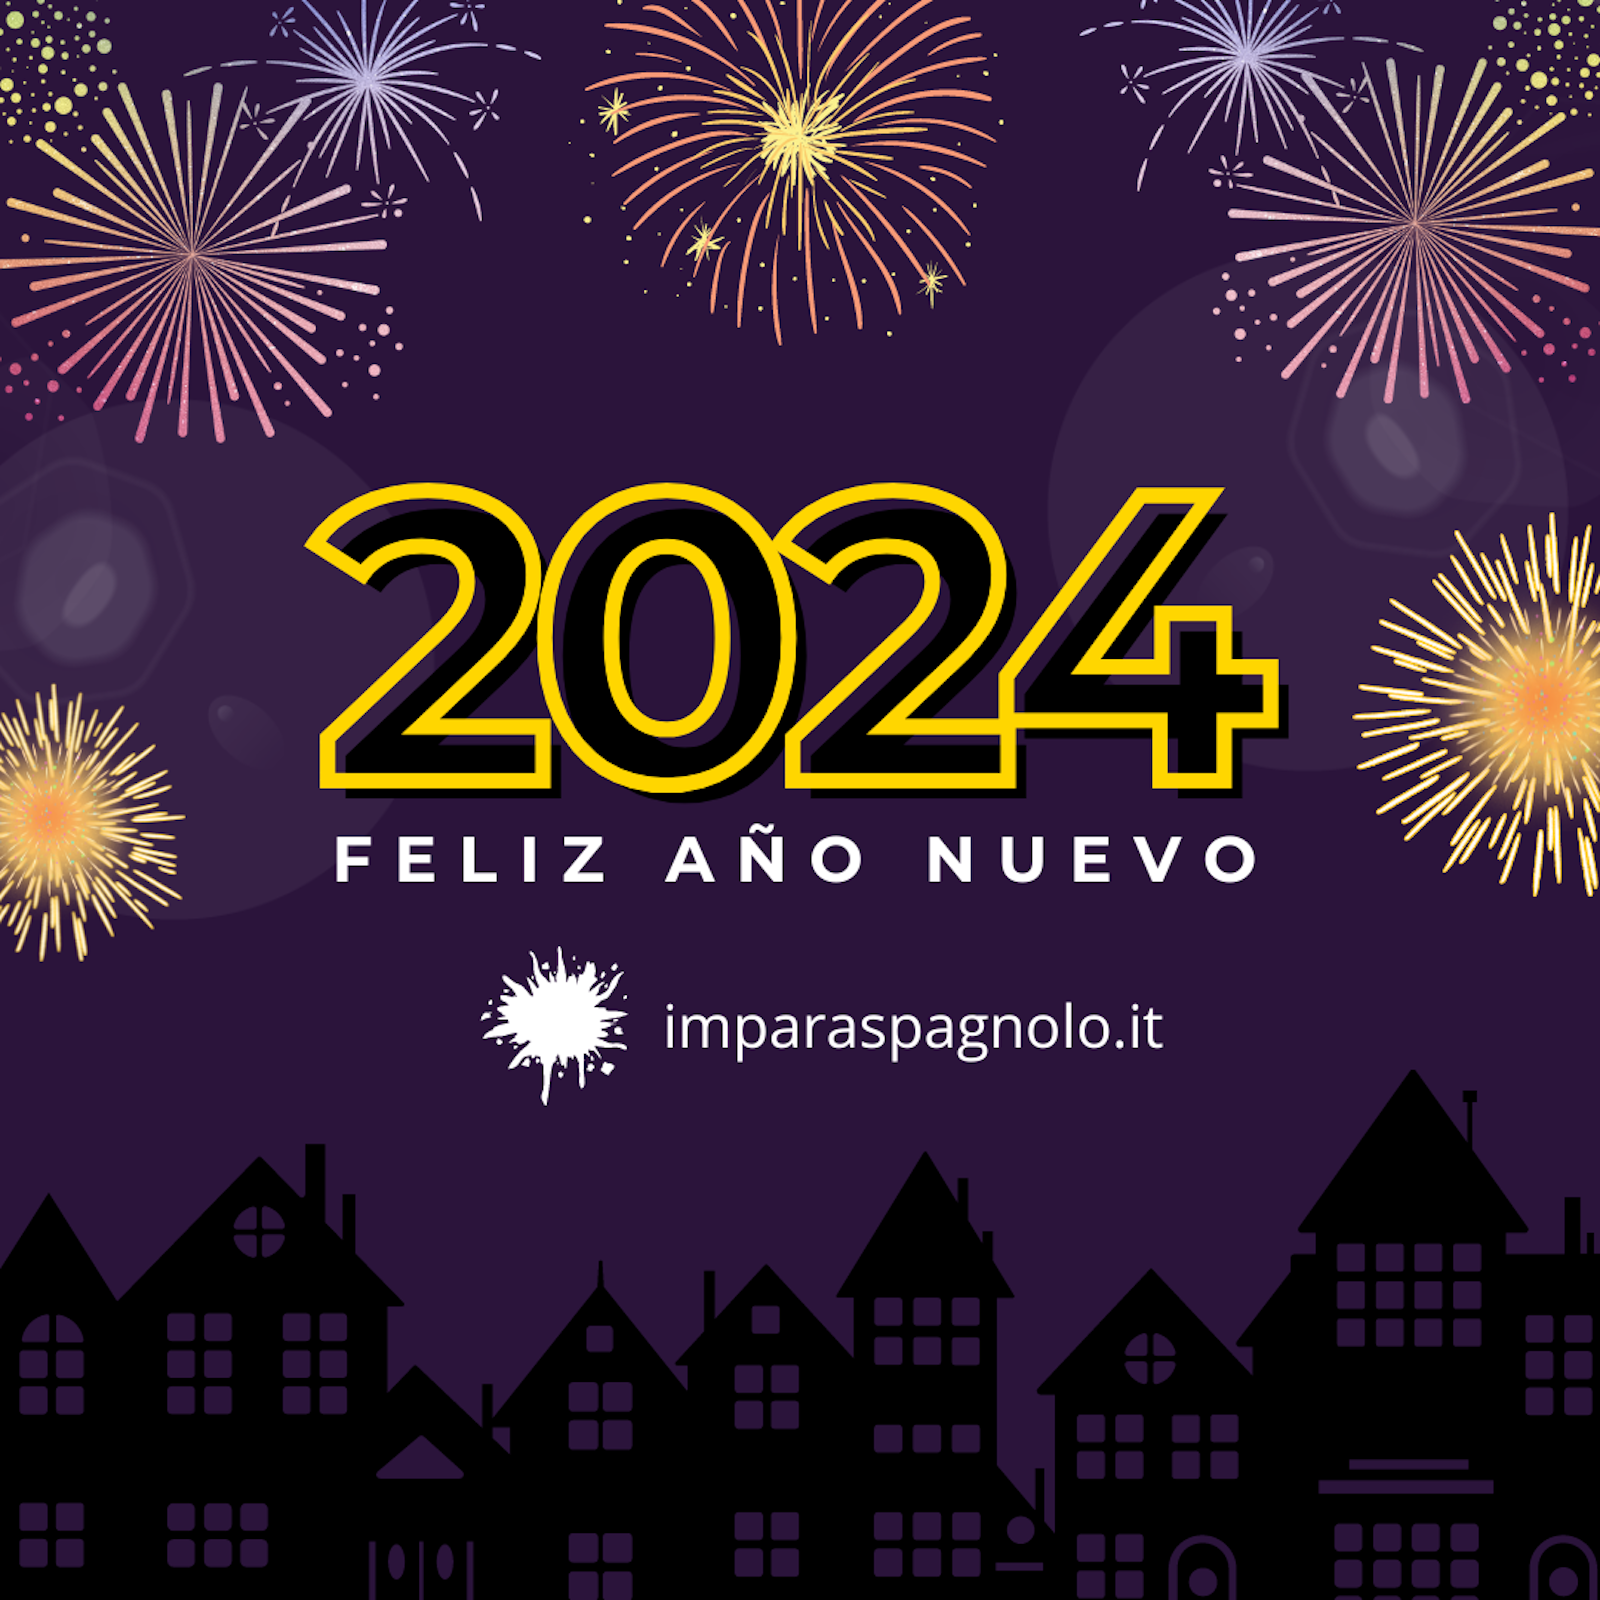 2024: Feliz año nuevo